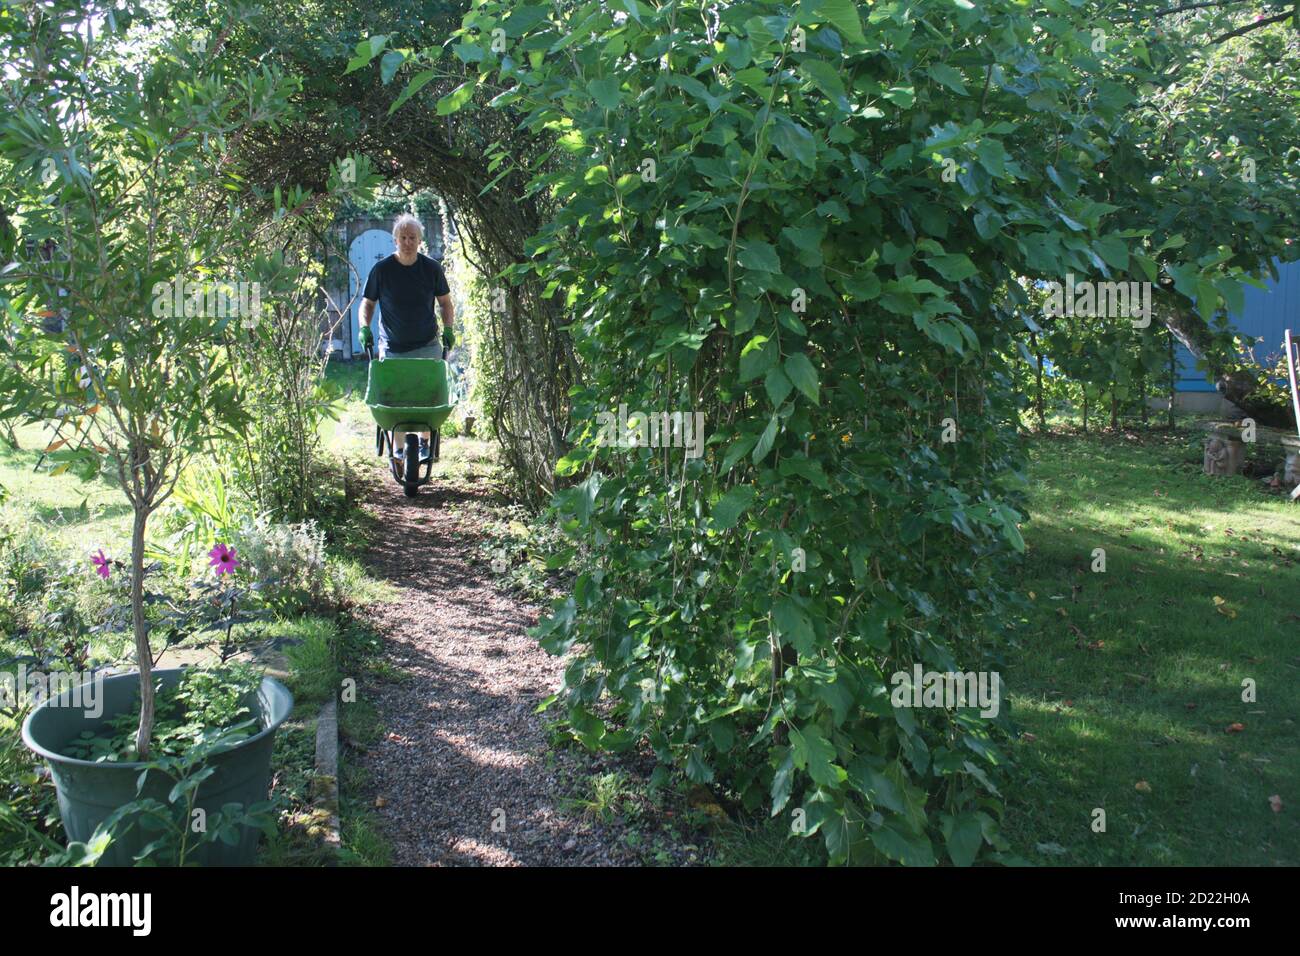 Vue sur le paysage en été jardin de campagne anglais avec poire espalier arbre aux fruits lavande rose arche buisson fleurs herbe pelouse et plantes et porte secrète Banque D'Images